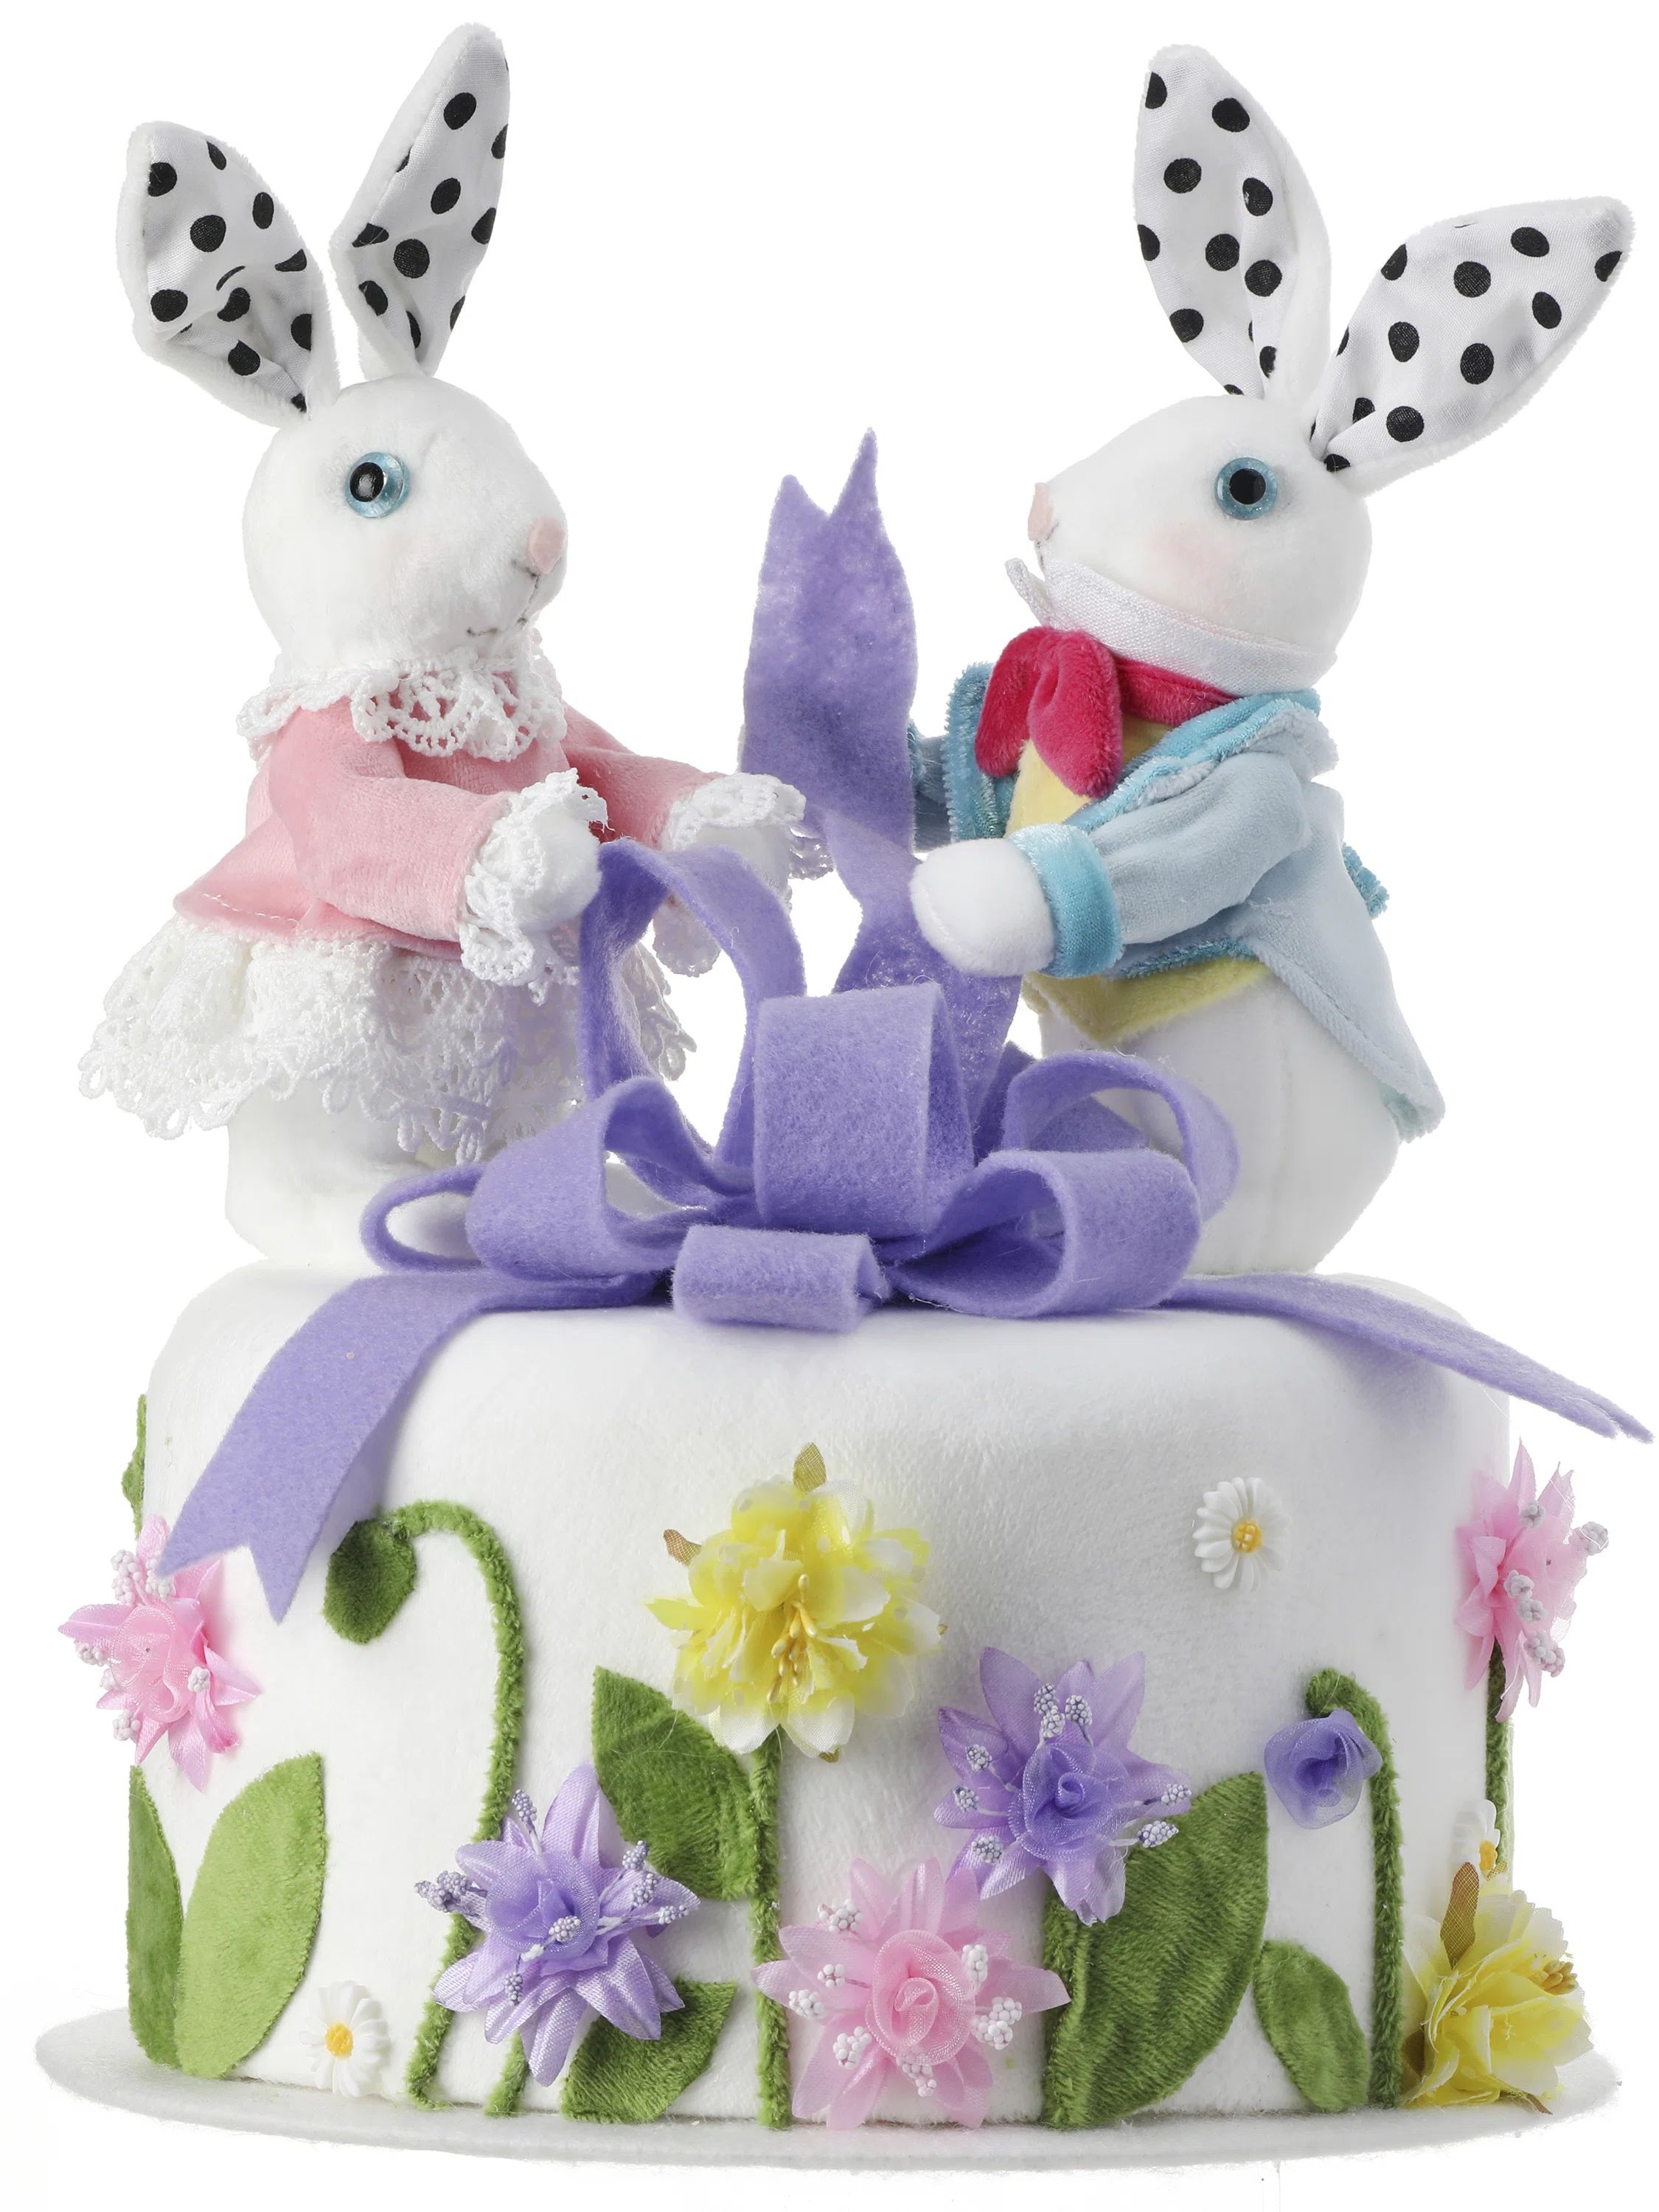 The Holiday Aisle® Styrofoam Bunnies And Bow Floral Cake 10.25" | Wayfair | Wayfair North America